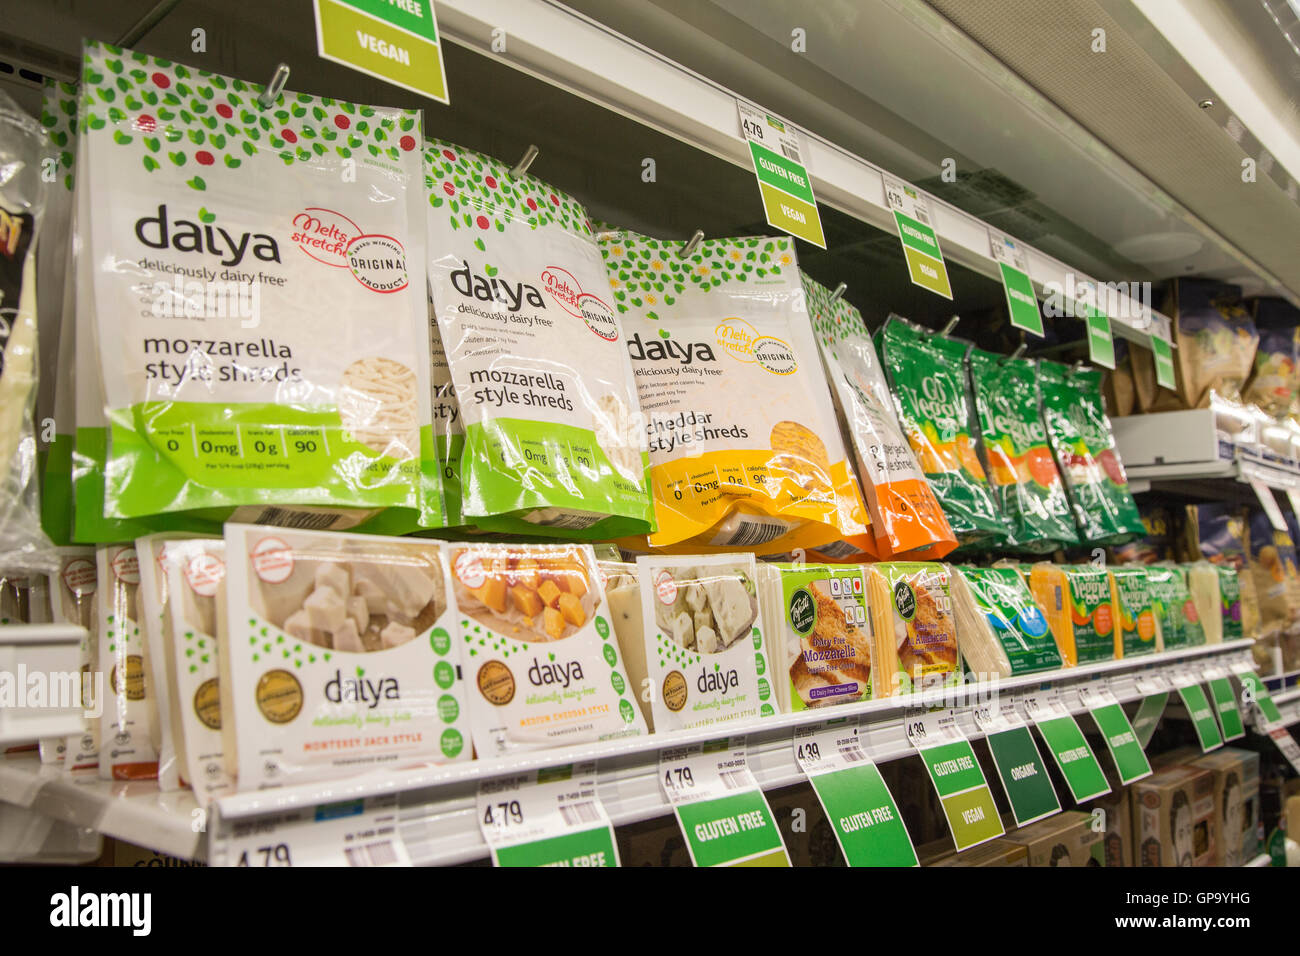 Eine Darstellung der Daiya Molkerei kostenlose Käse im Kühlschrank Fall im Supermarkt. Stockfoto